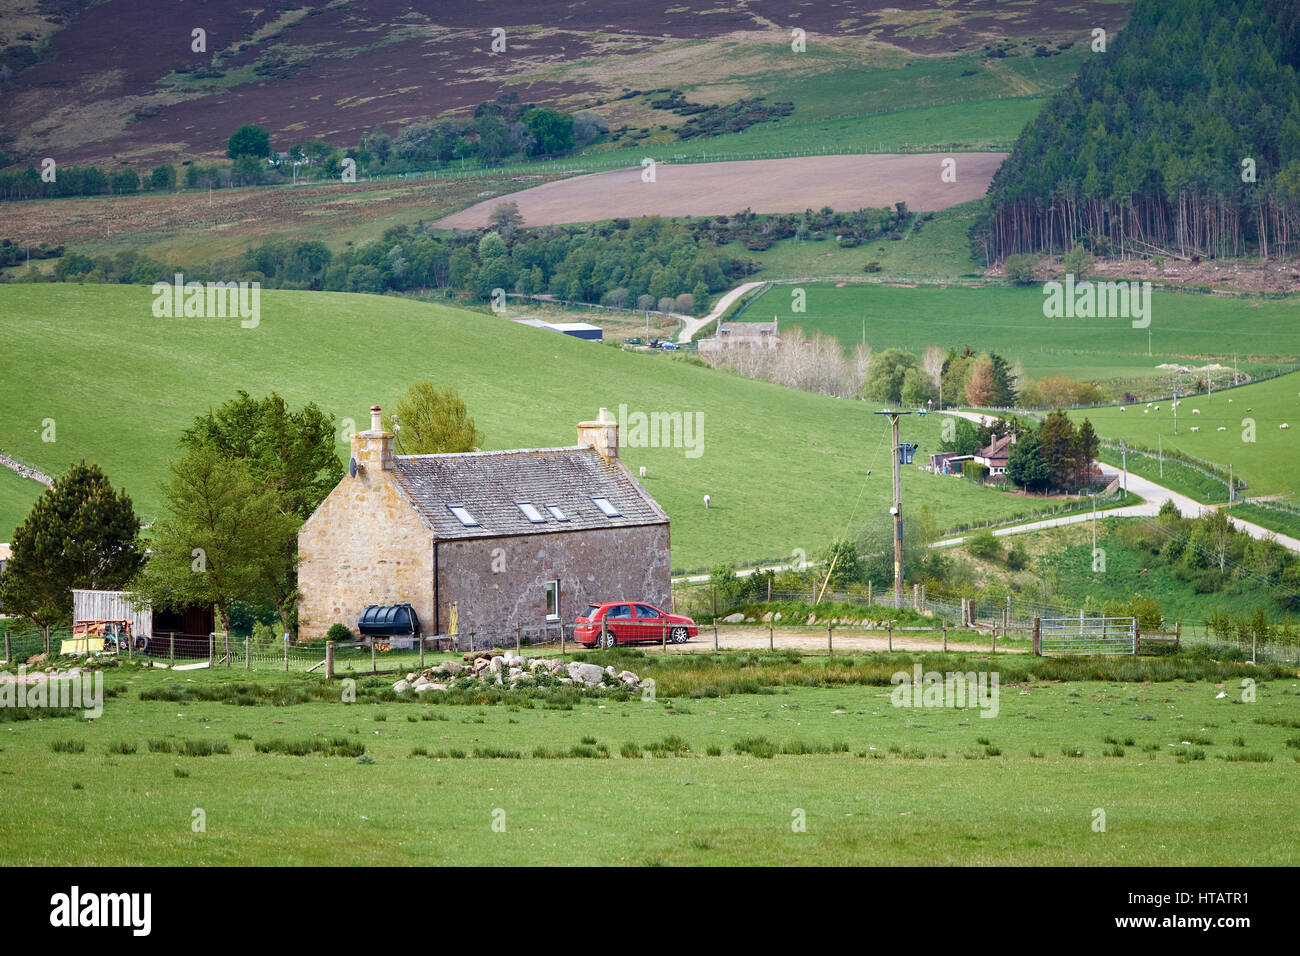 Fattoria di tradizionali edifici impostatanell highlands scozzesi campagna. Regno Unito. Foto Stock